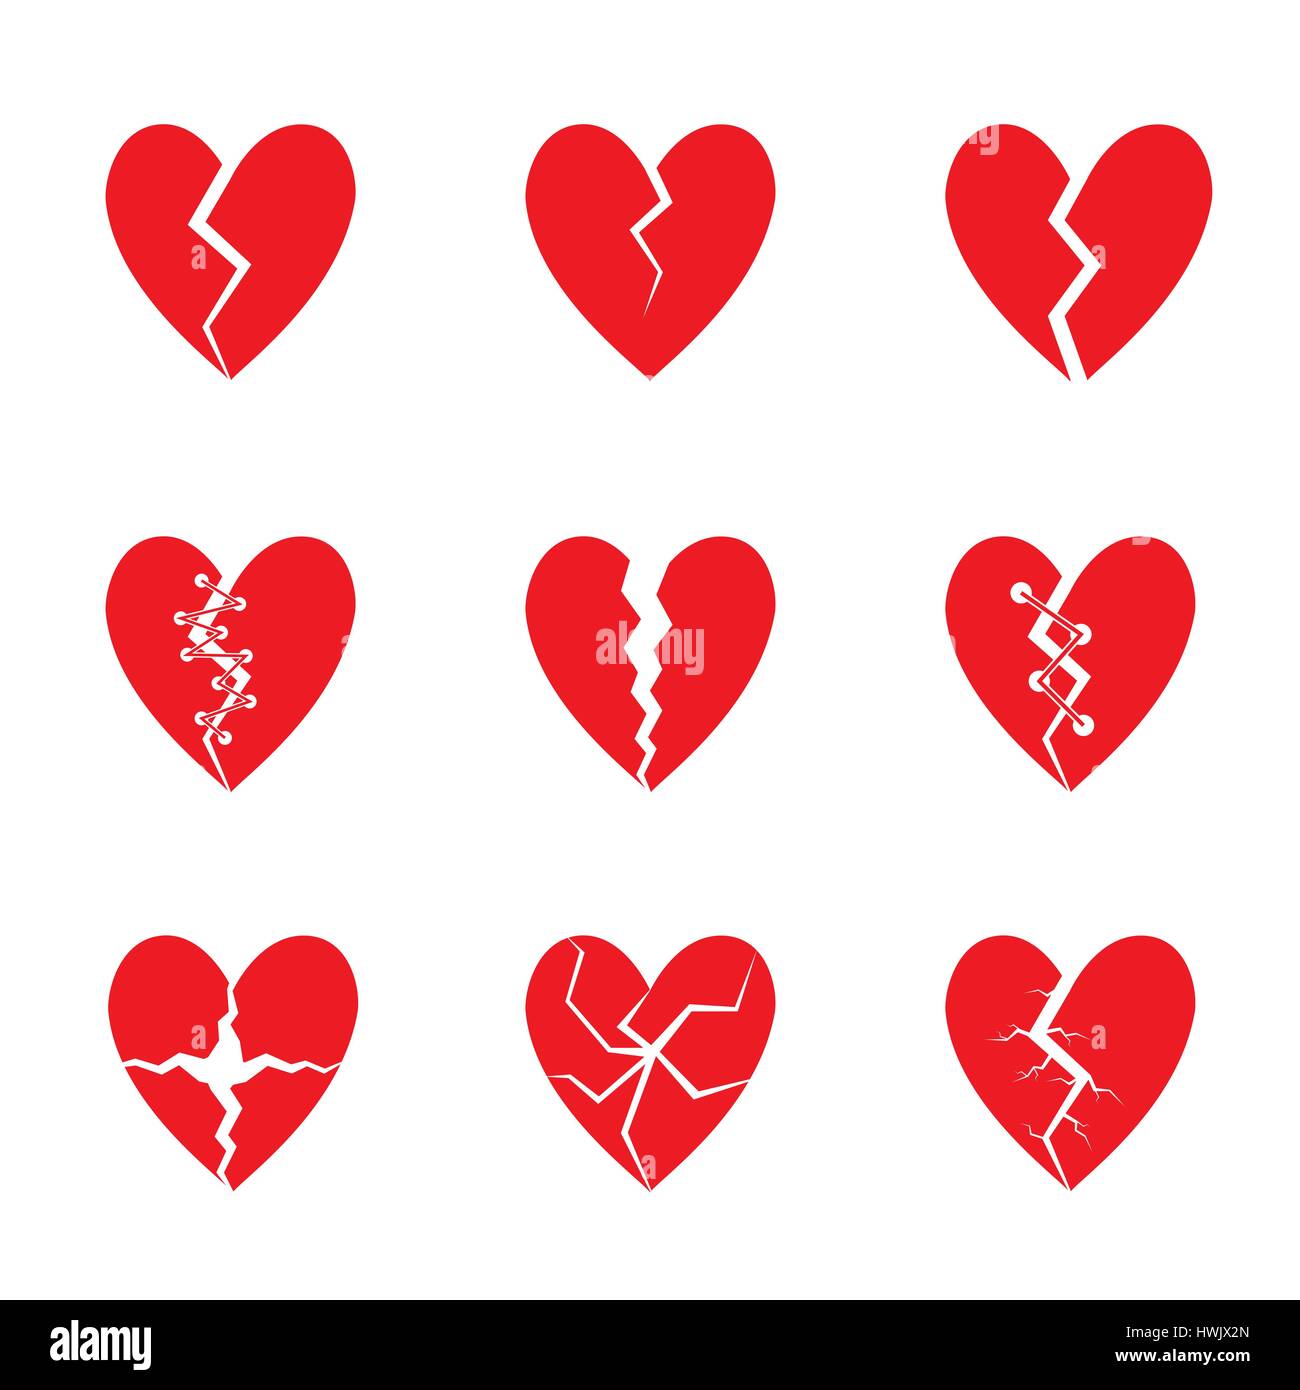 Insieme del cuore rosso Illustrazione Vettoriale